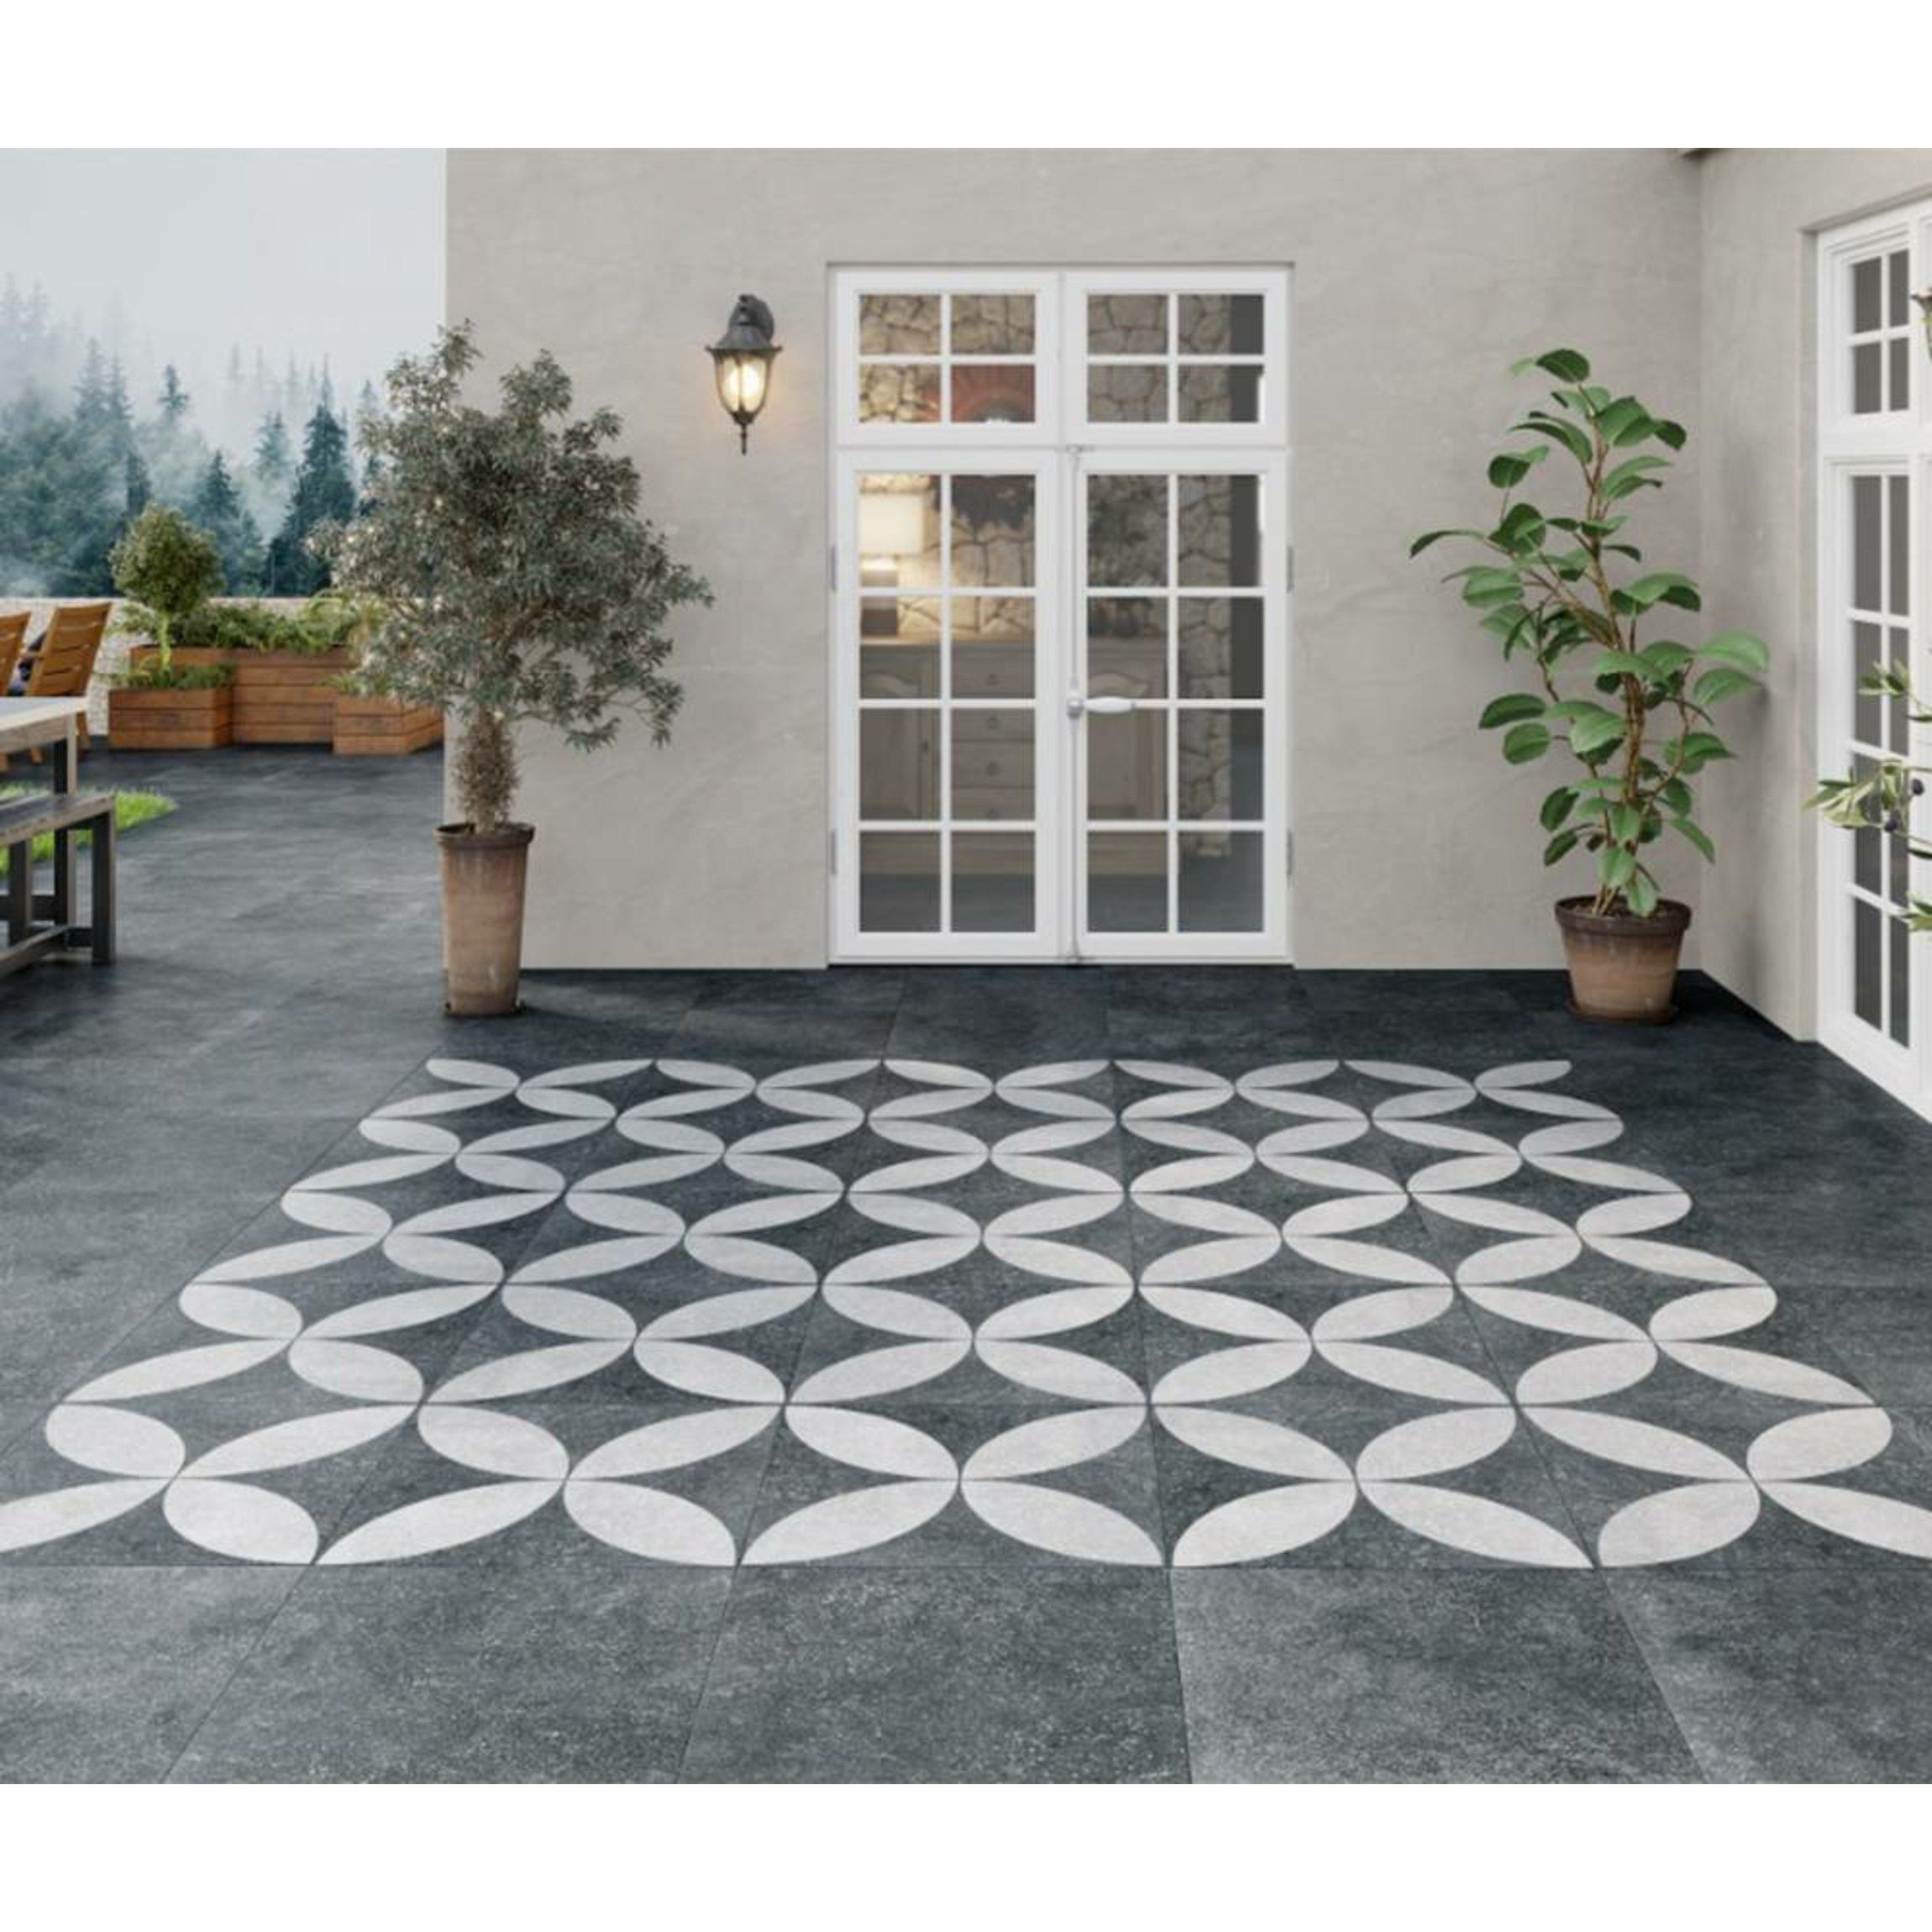 Hardblue Dark Grey Decor Porcelain, Grey Decorative Floor Tiles